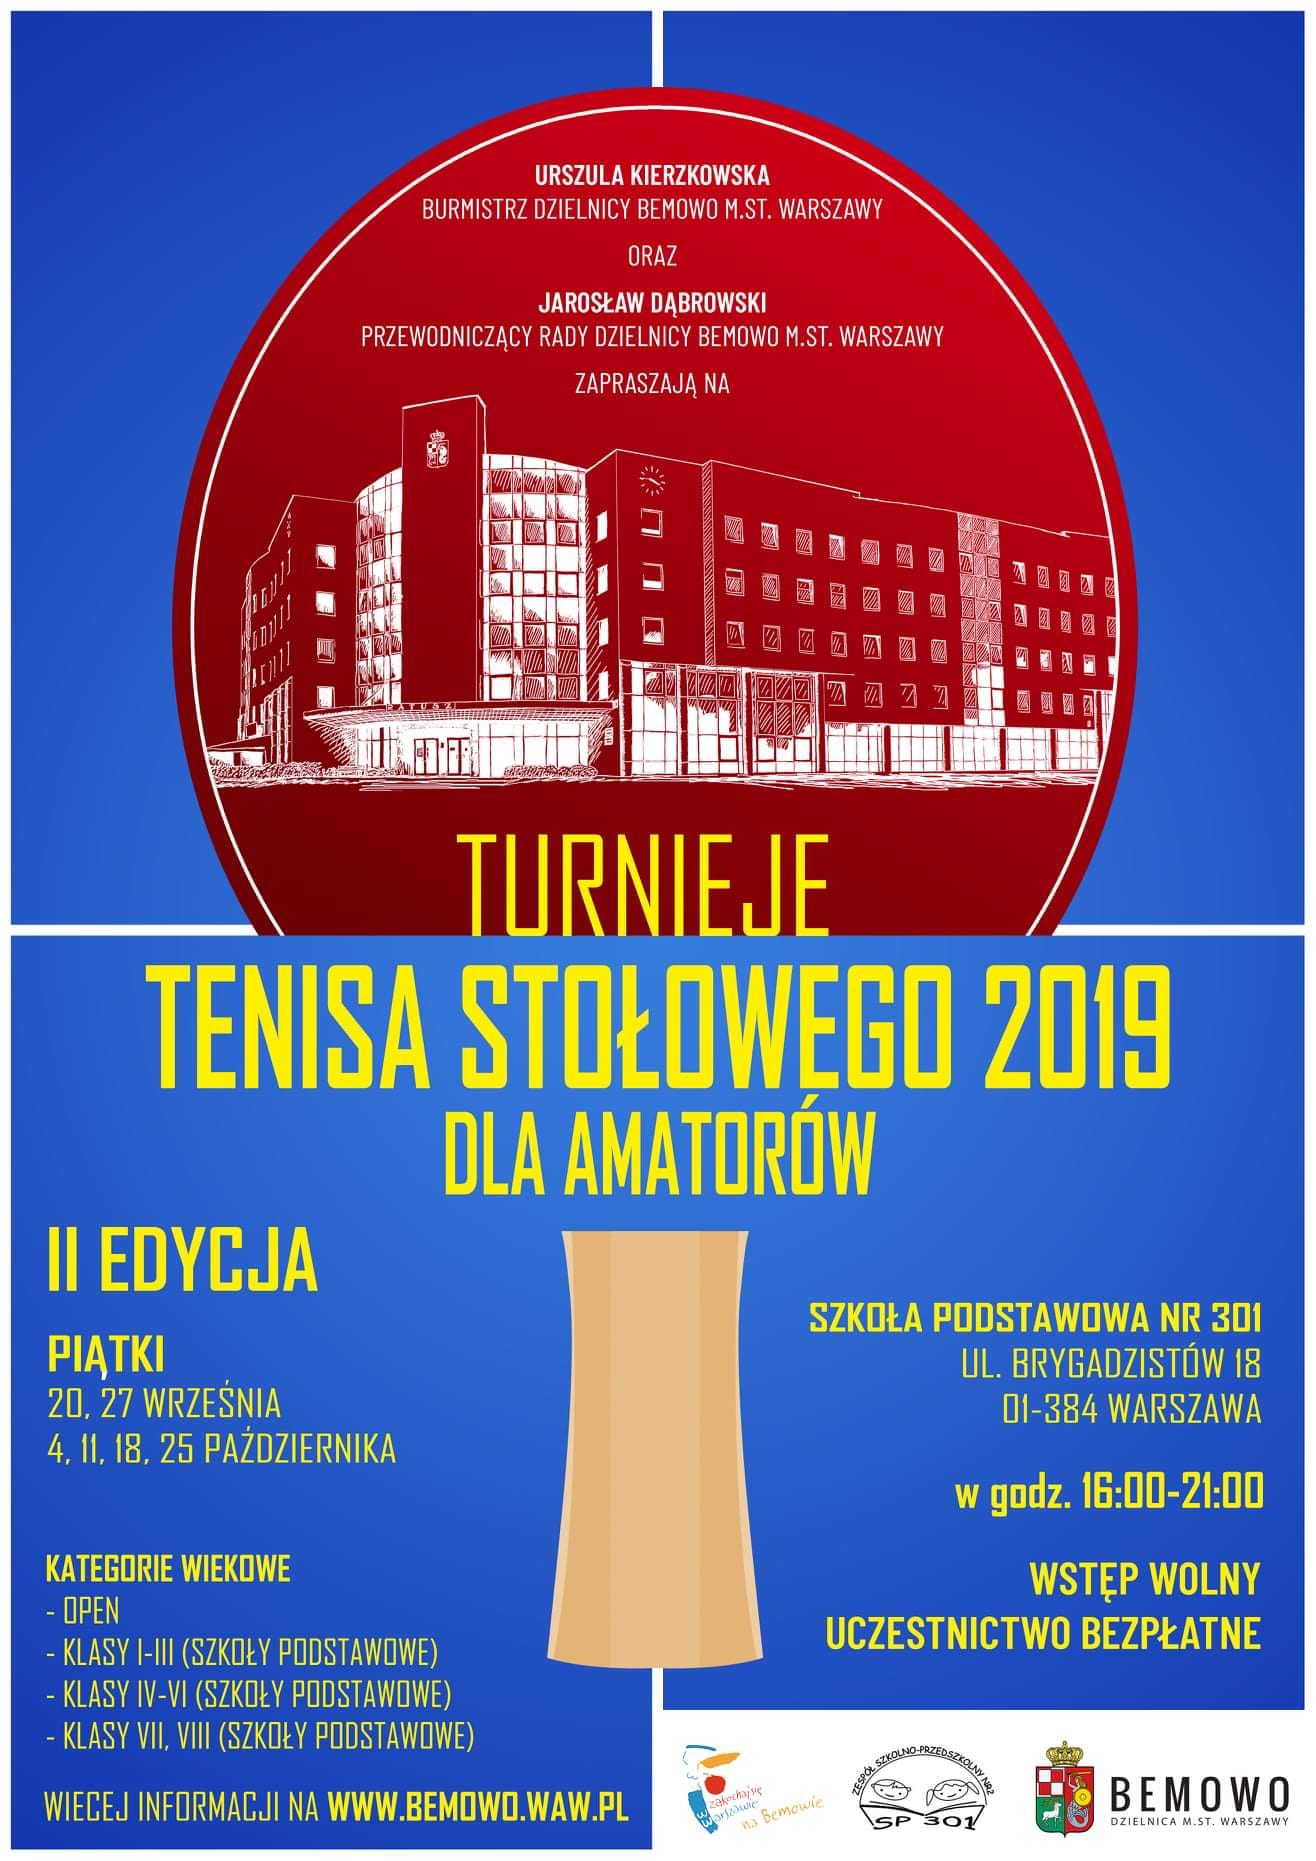 Plakat turnieju Turnieje tenisa stołowego Bemowo - Brygadzistów (25 października 2019) - II EDYCJA